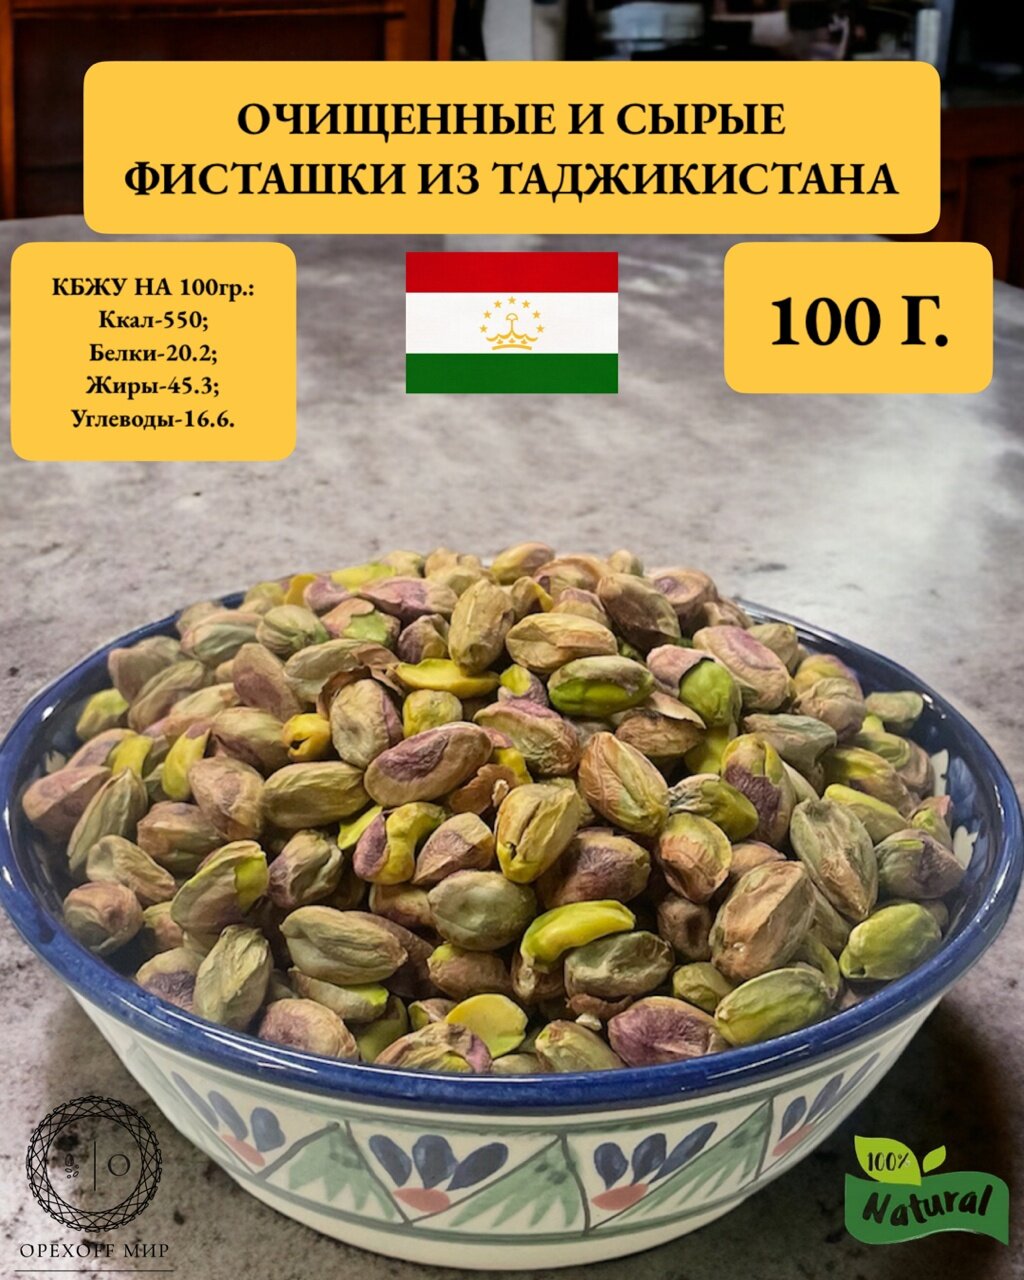 Очищенные и сырые фисташковые орехи из Таджикистана-100 грамм.